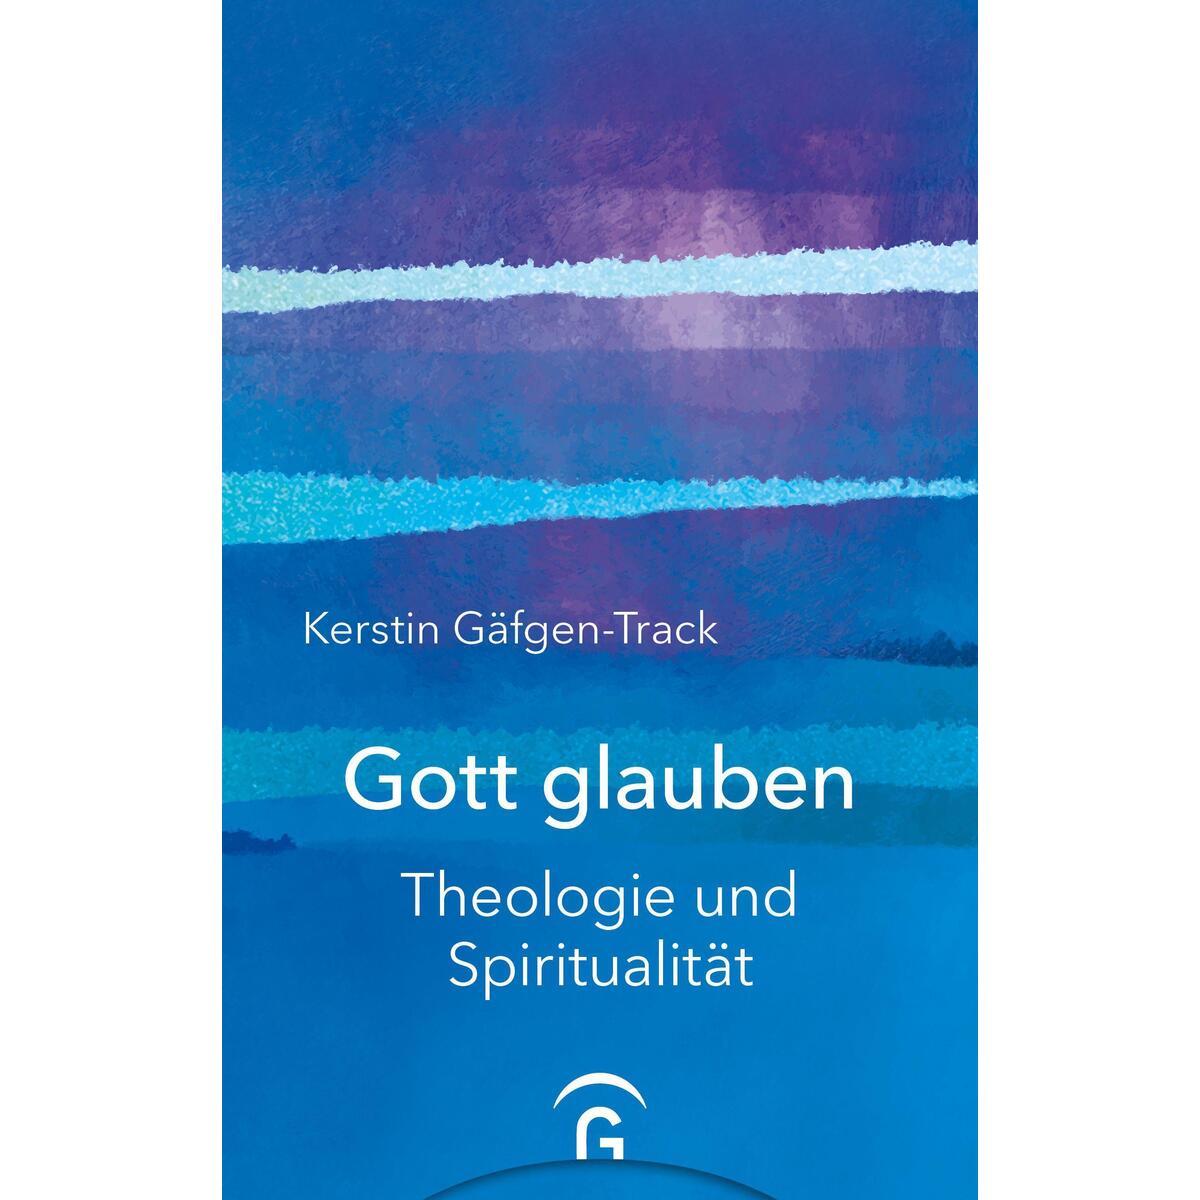 Gott glauben von Guetersloher Verlagshaus